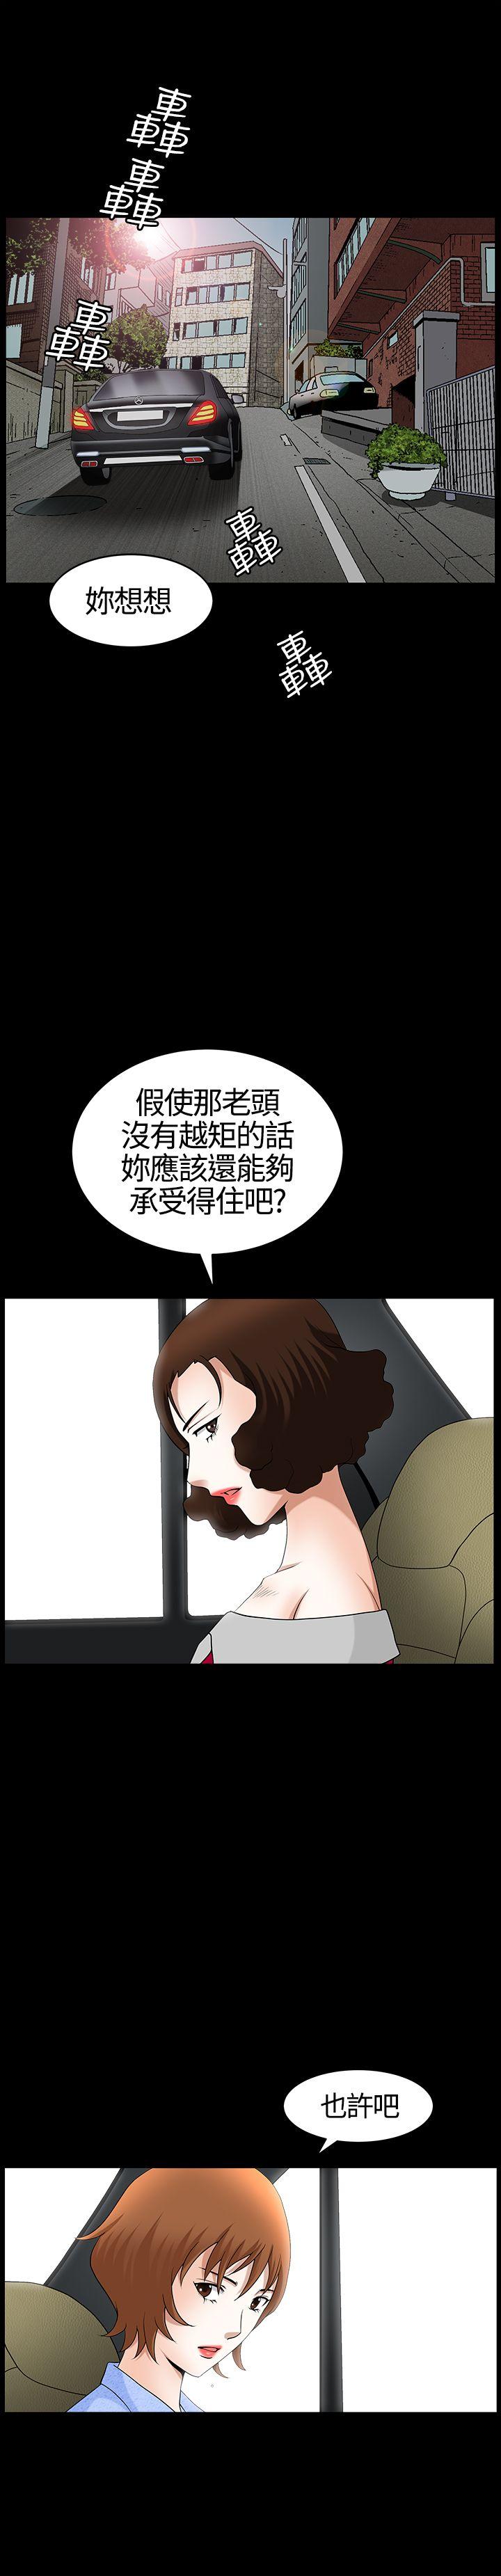 韩国污漫画 人妻性解放3:粗糙的手 第20话 21